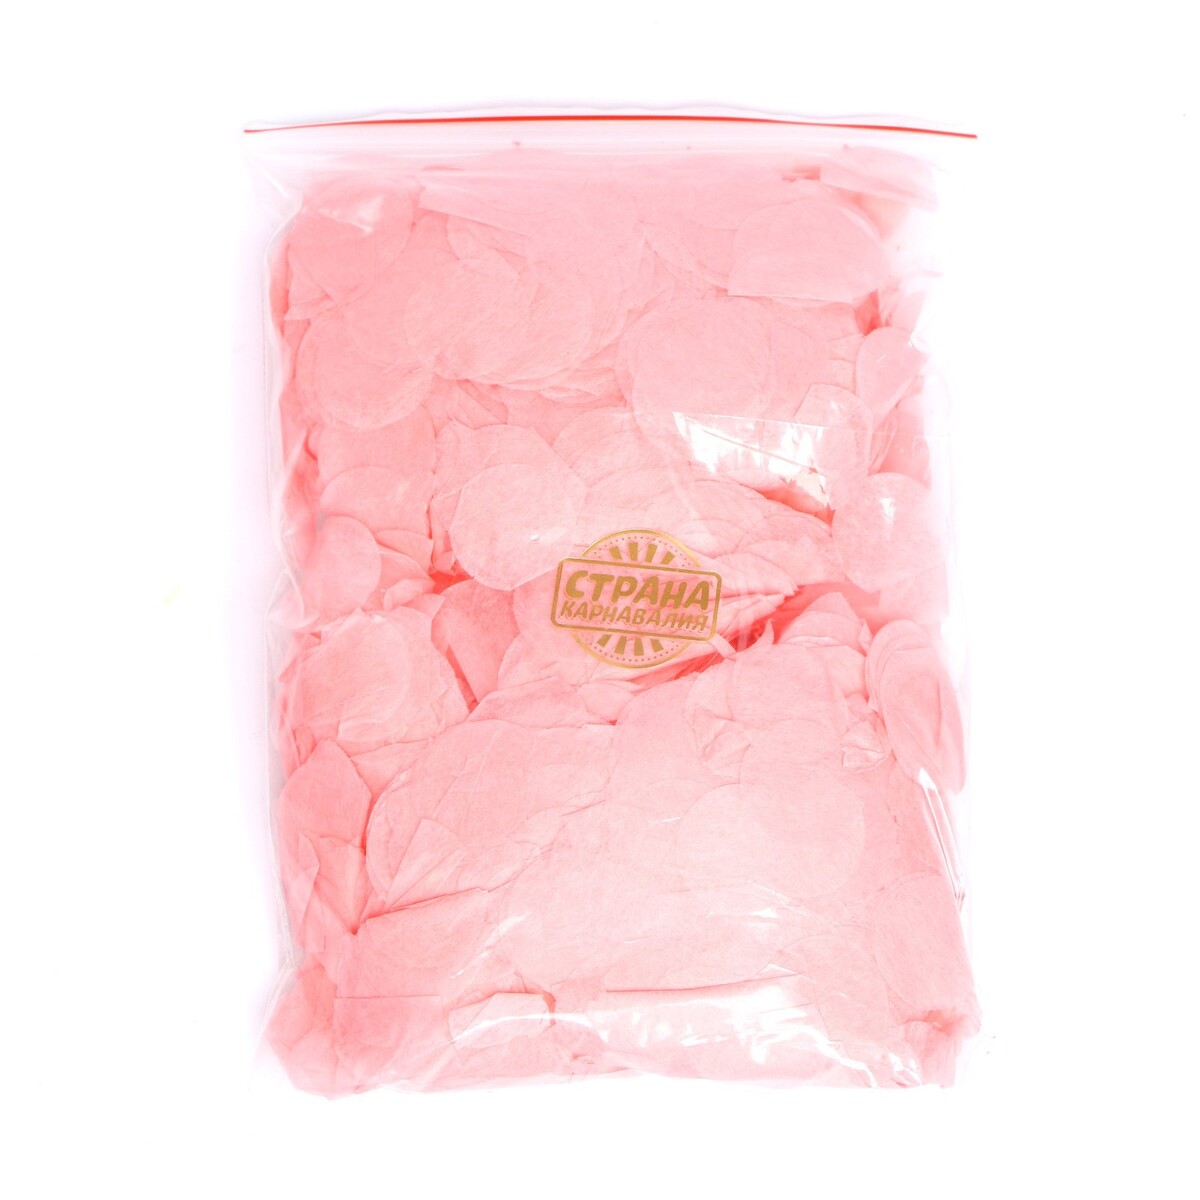 Наполнитель для шара, конфетти розовое, 100 г, 2,5 см конфетти для воздушного шара красное 50 гр